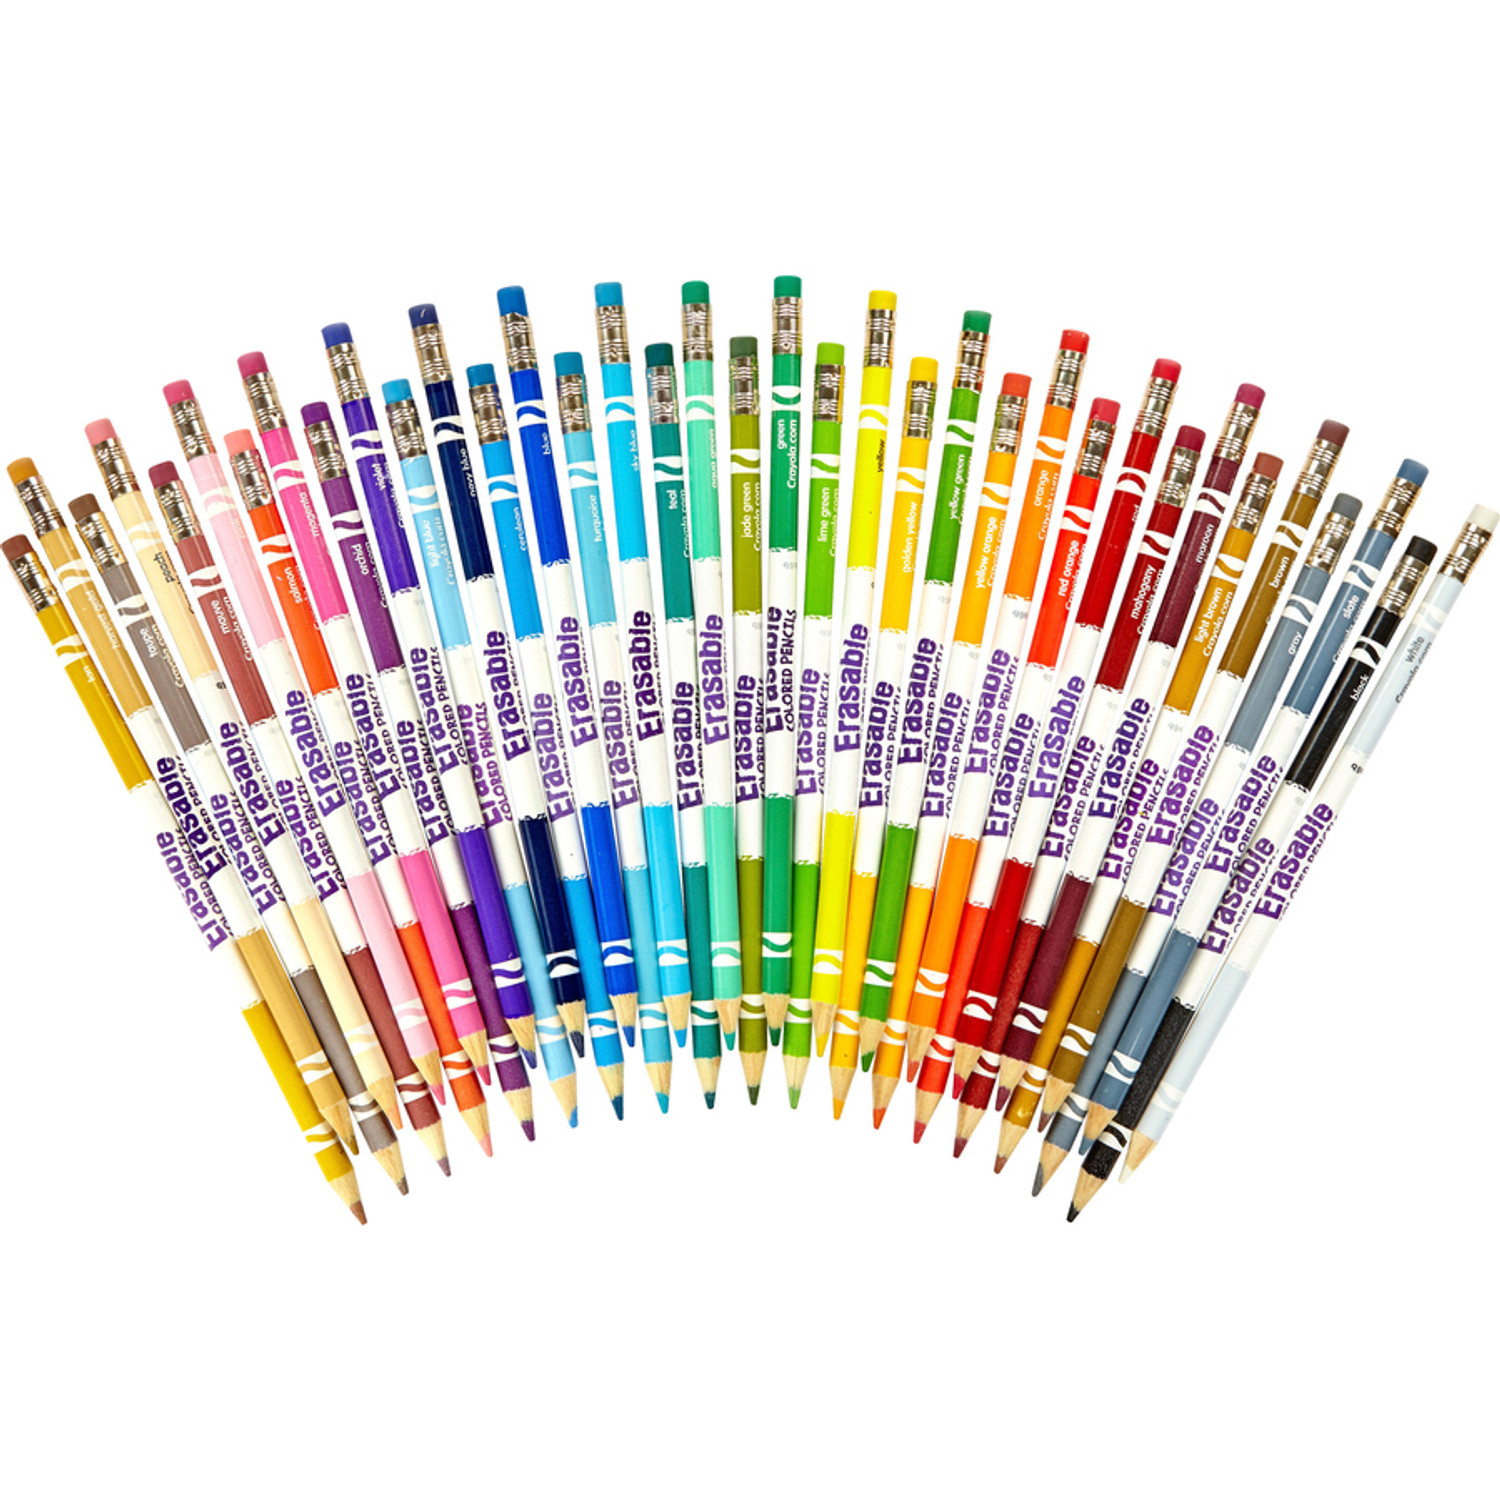 Crayola Color Pencils, Erasable, 3.3mm Lead, 36/PK, Assorted (CYO681036) -  Envision Xpress